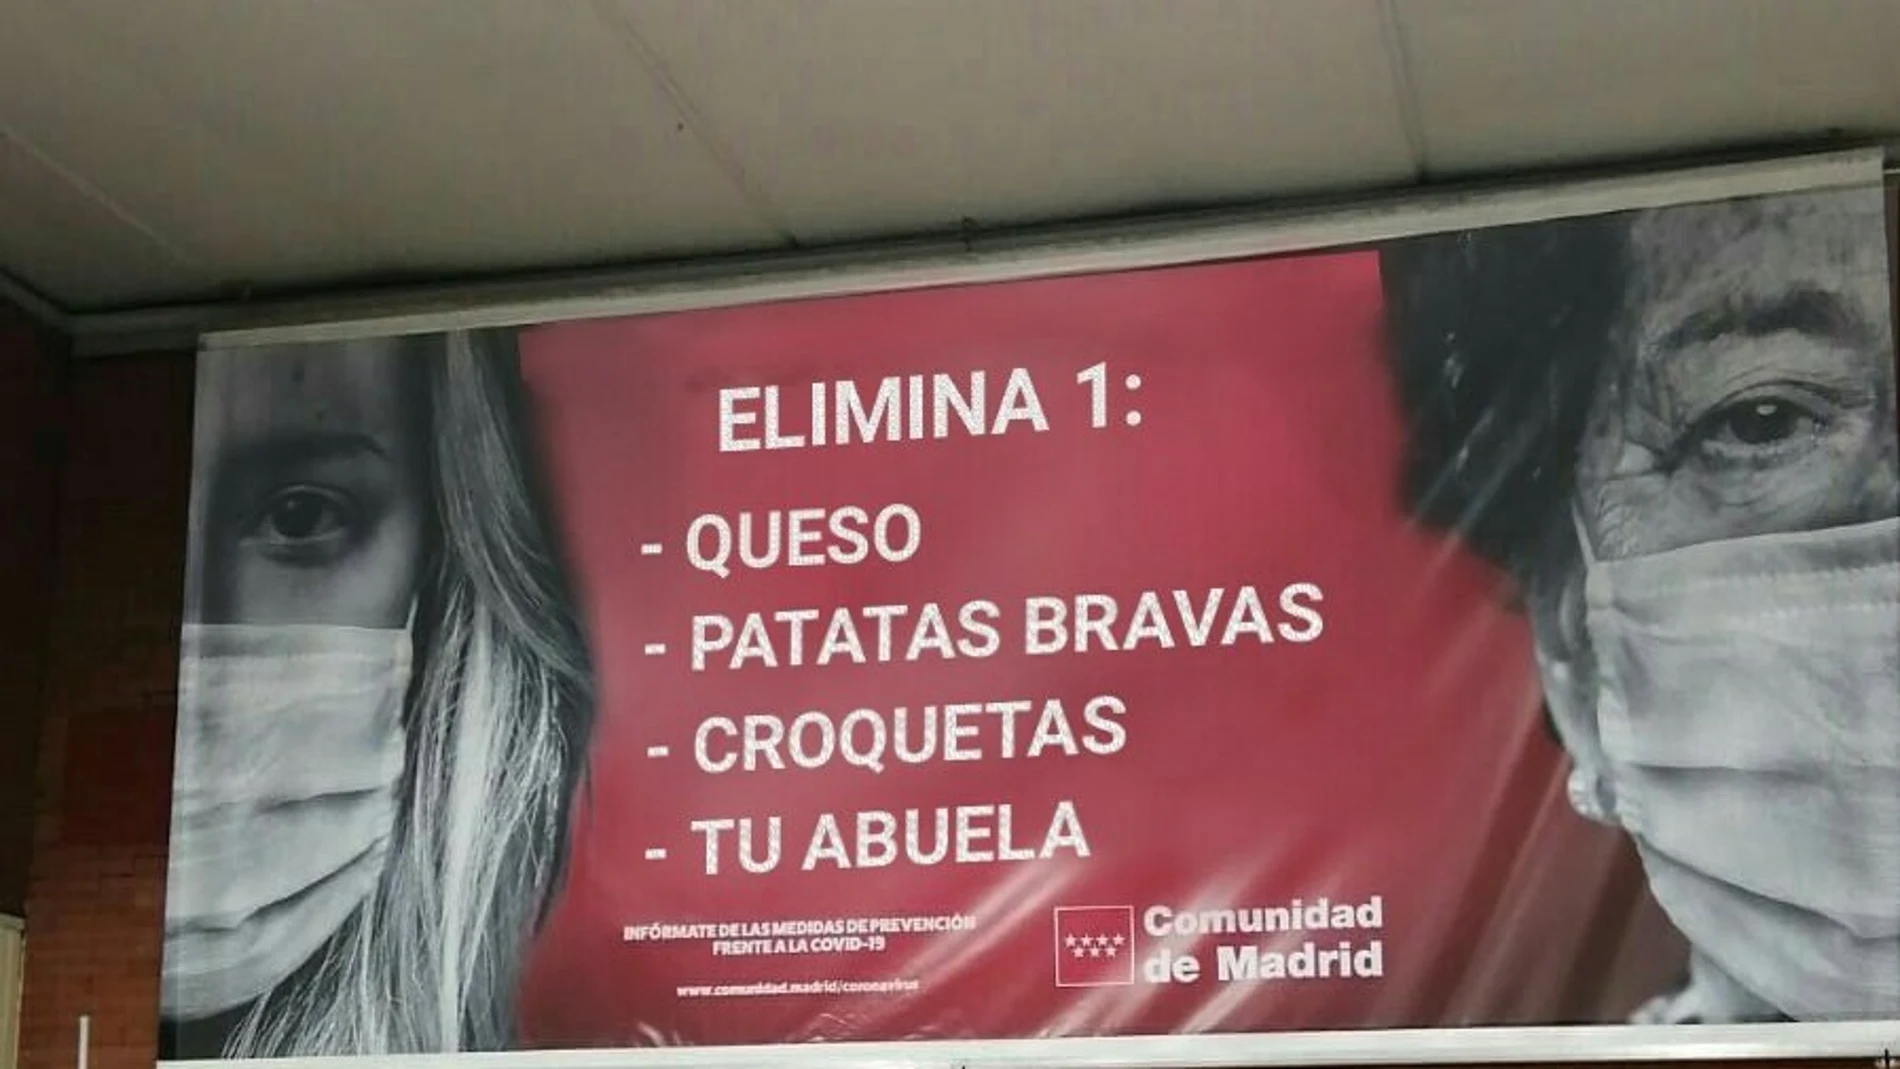 Cartel falso sobre la campaña de la comunidad de Madrid